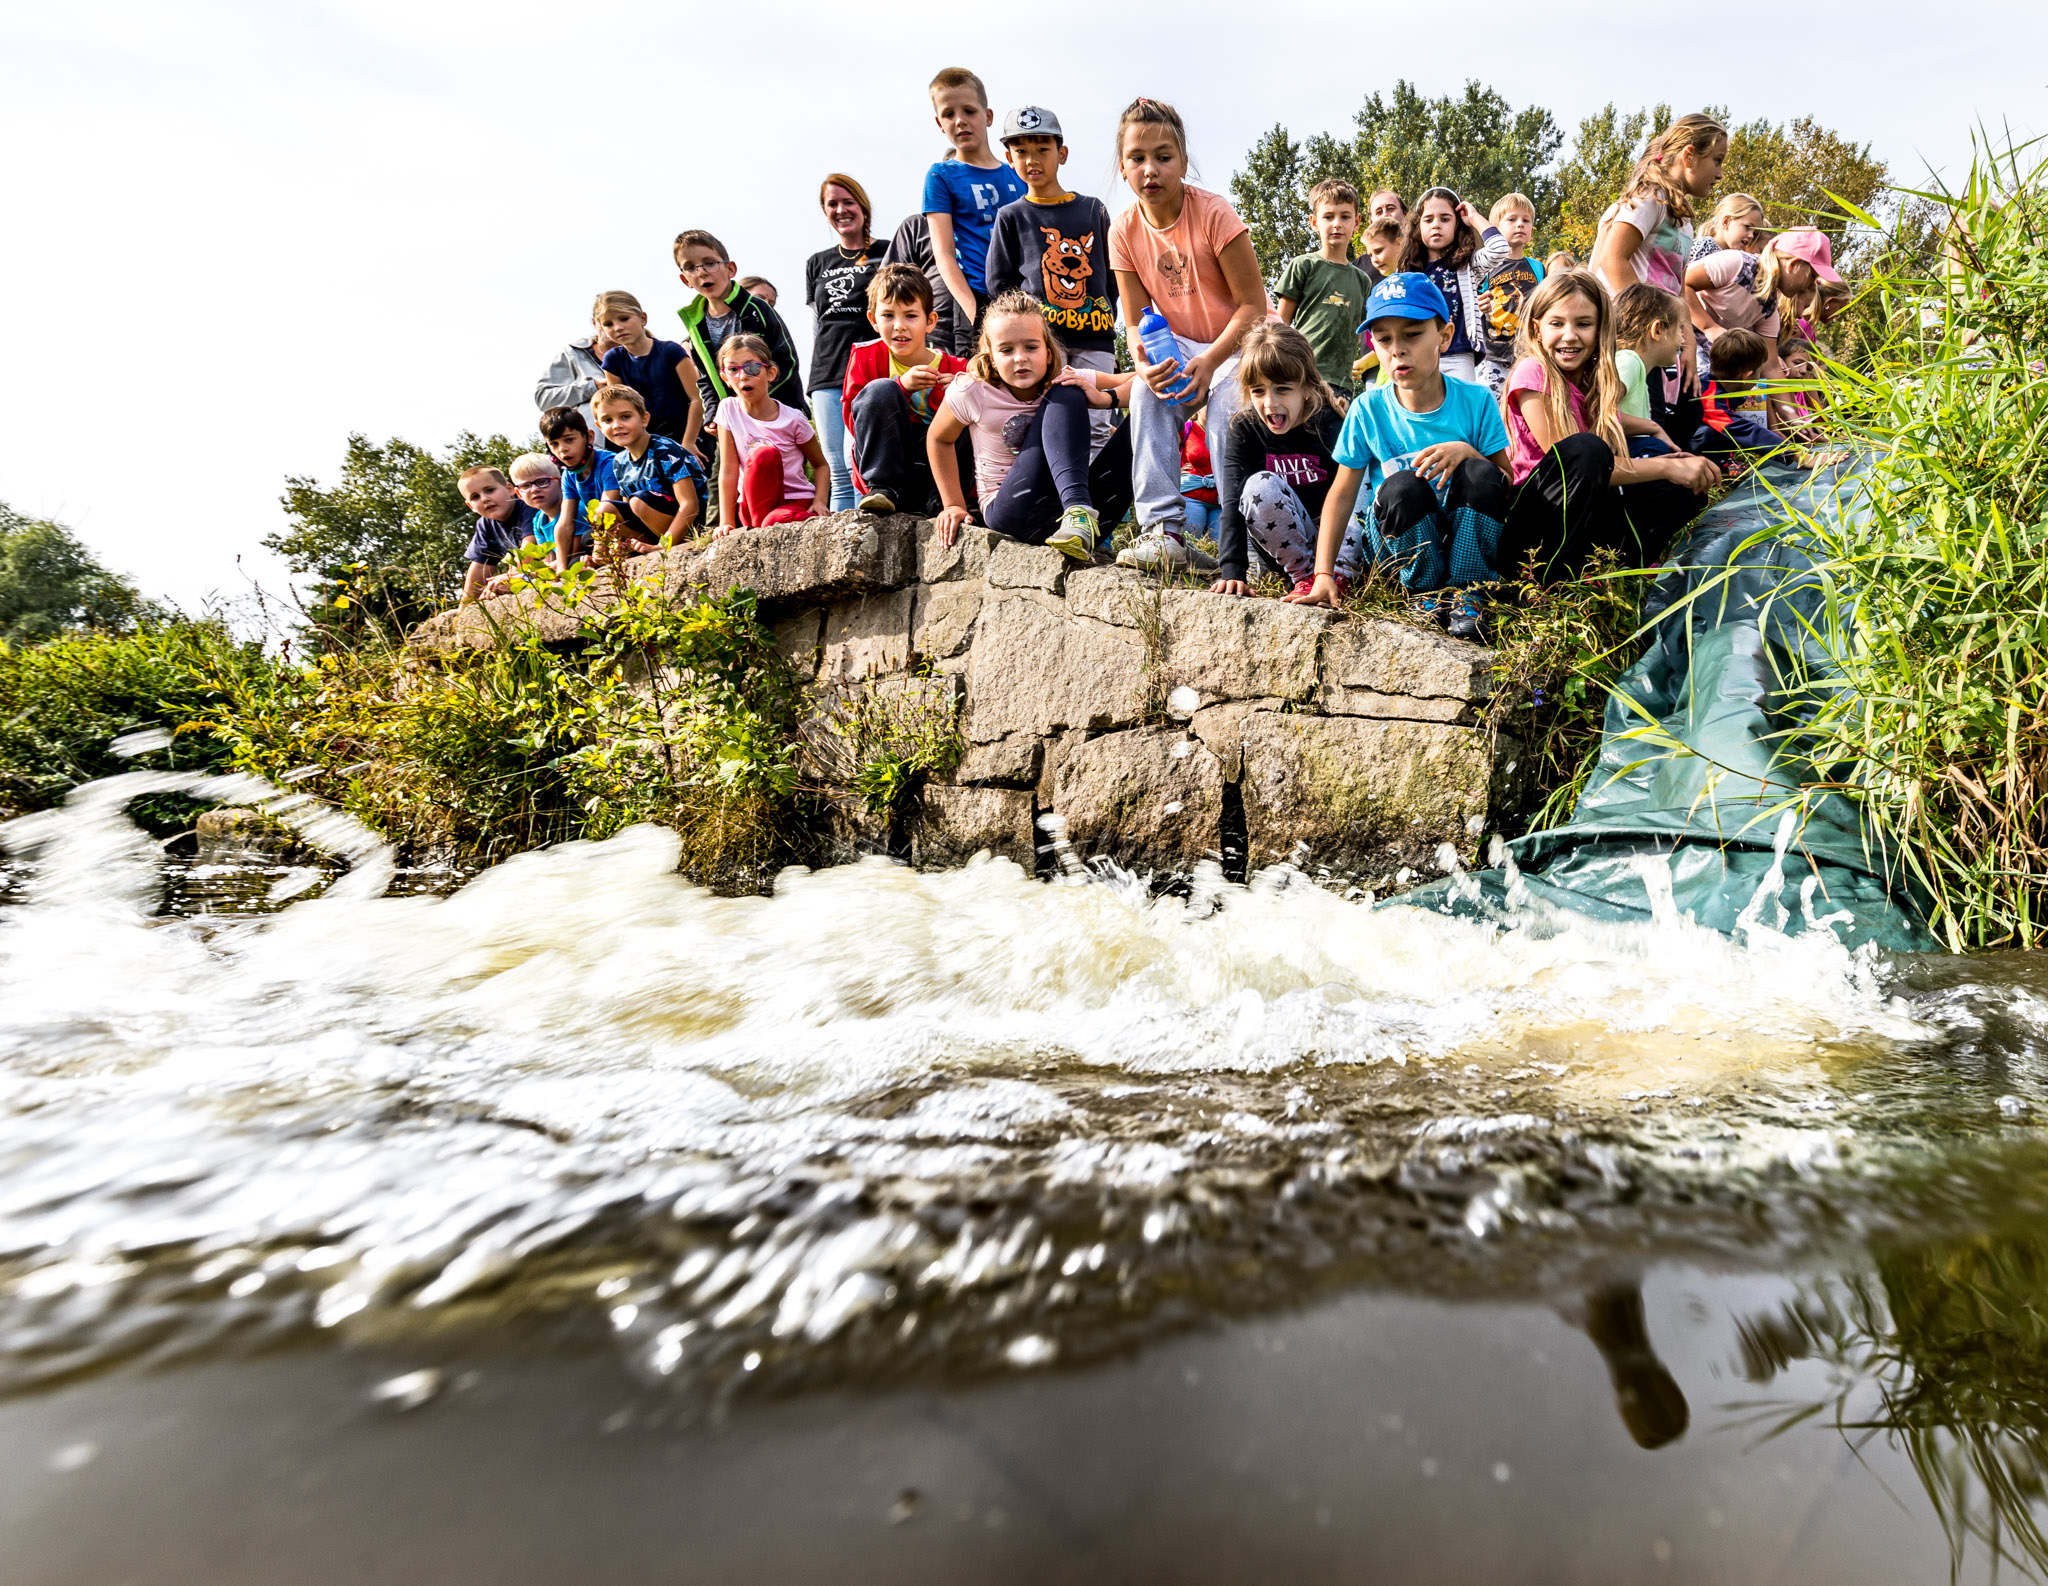 04 Zarybňování Labe pokračuje. Děti společně s rybáři vysadili do řeky půl metráku ryb .jpg